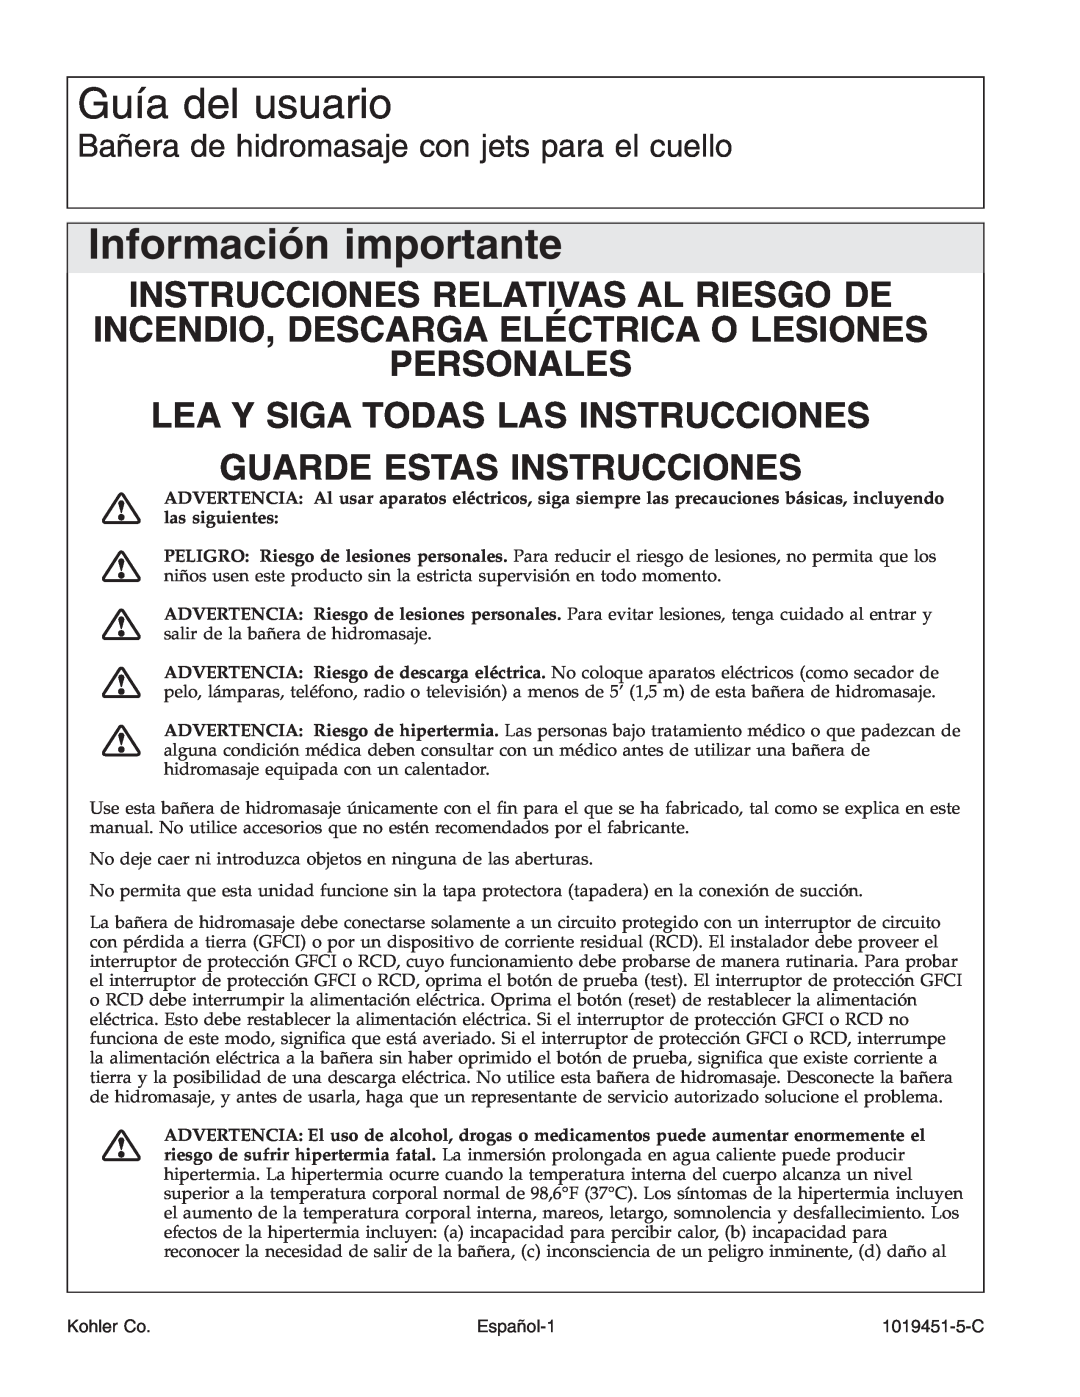 Kohler K-865 manual Guía del usuario, Información importante, Instrucciones Relativas Al Riesgo De 